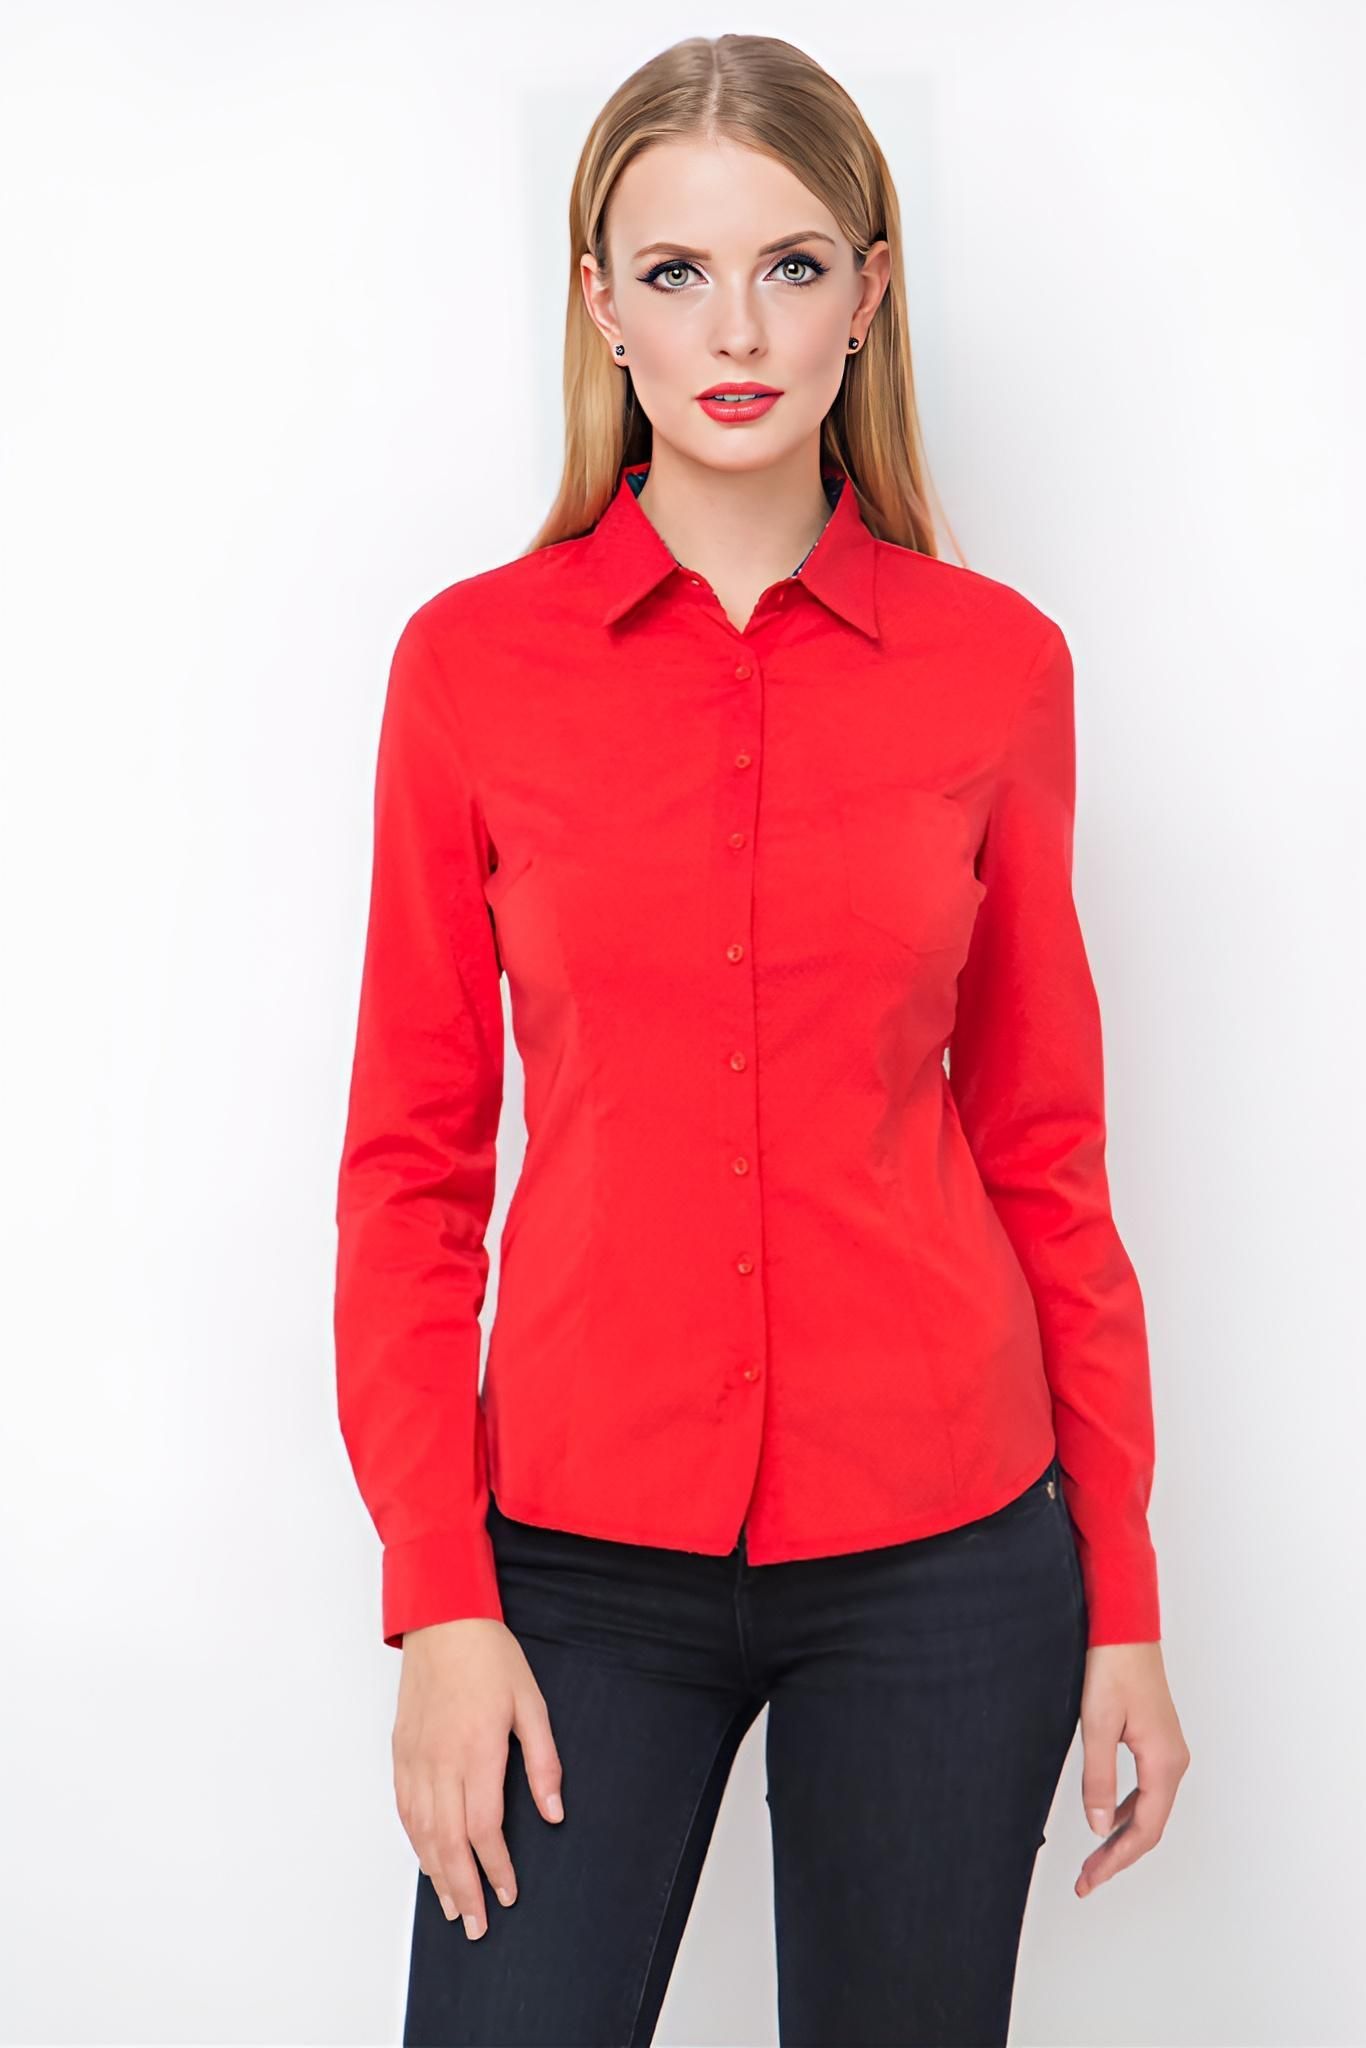 Красные блузки женская. Красная рубашка женская. Красная блузка. Рубашка красная жениски. Красная блузка рубашка женская.